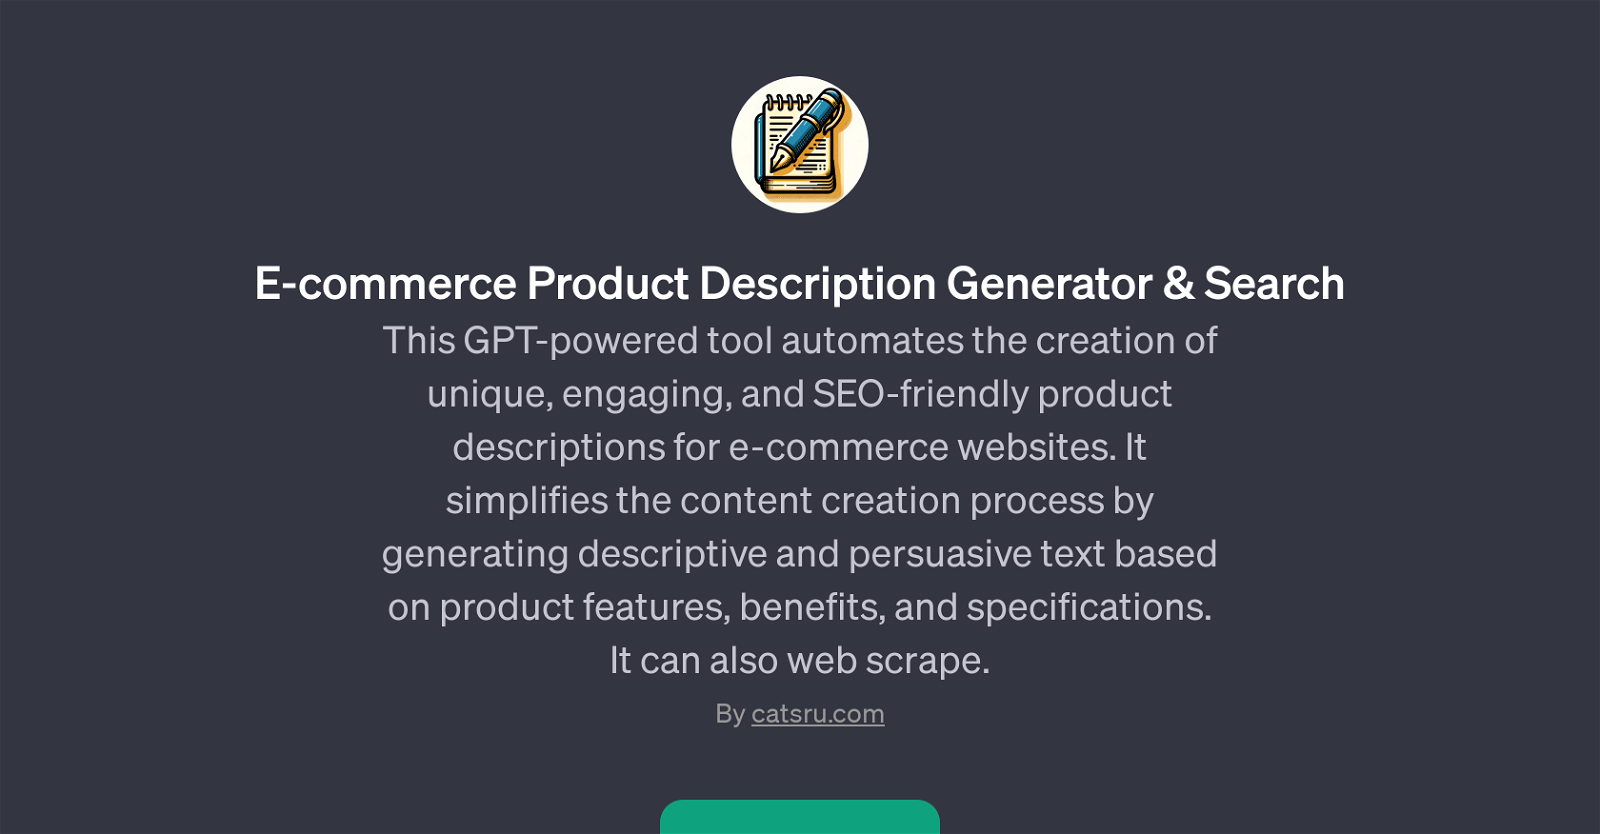 E-commerce Product Description Generator & Search website